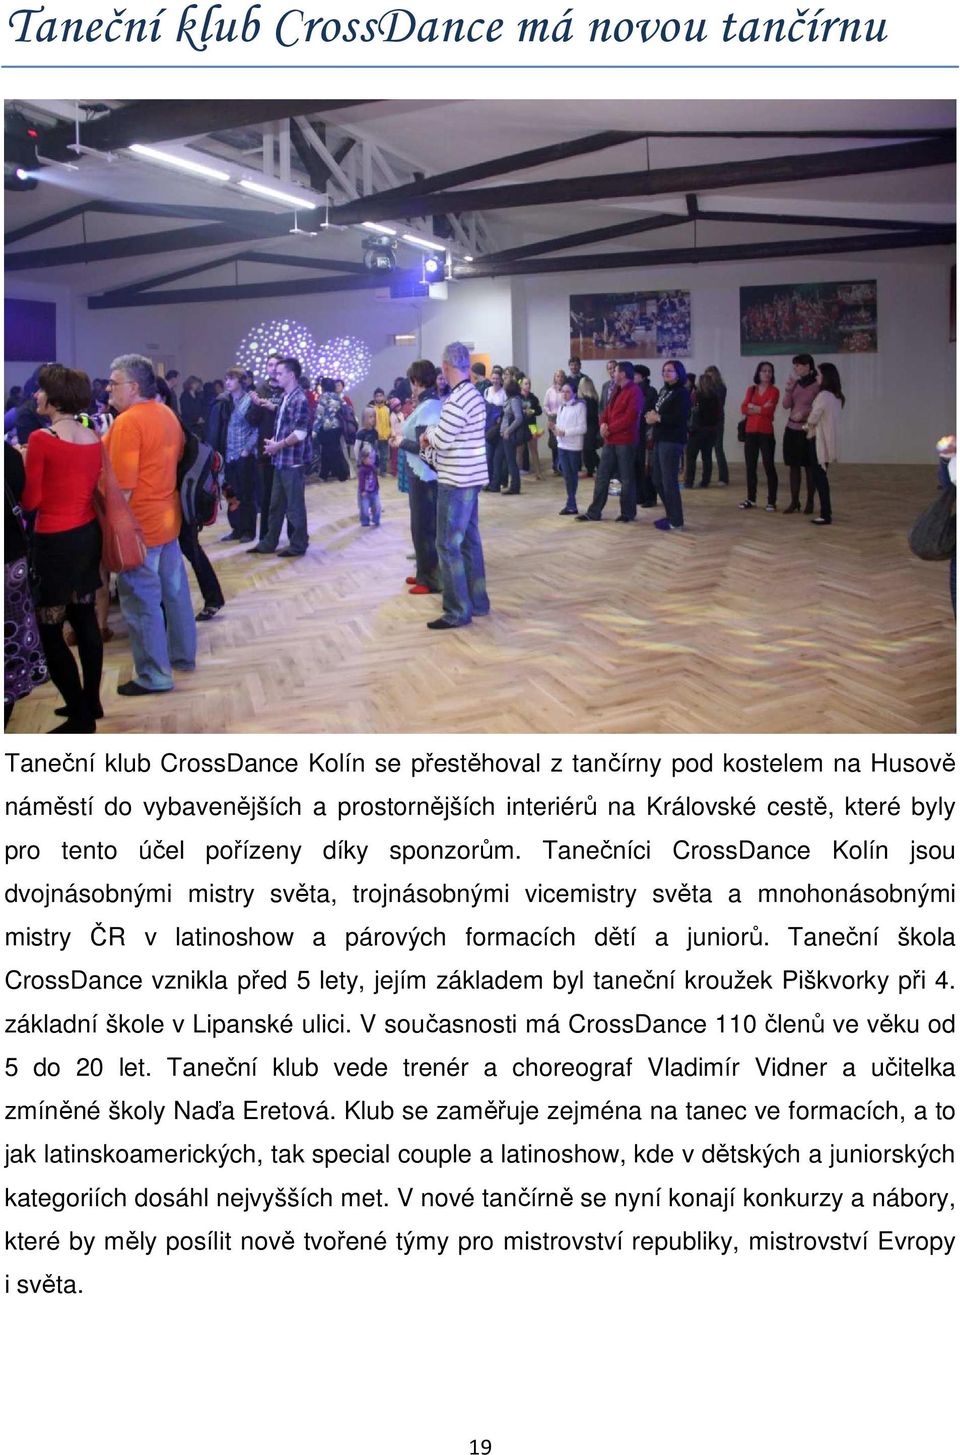 Tanečníci CrossDance Kolín jsou dvojnásobnými mistry světa, trojnásobnými vicemistry světa a mnohonásobnými mistry ČR v latinoshow a párových formacích dětí a juniorů.